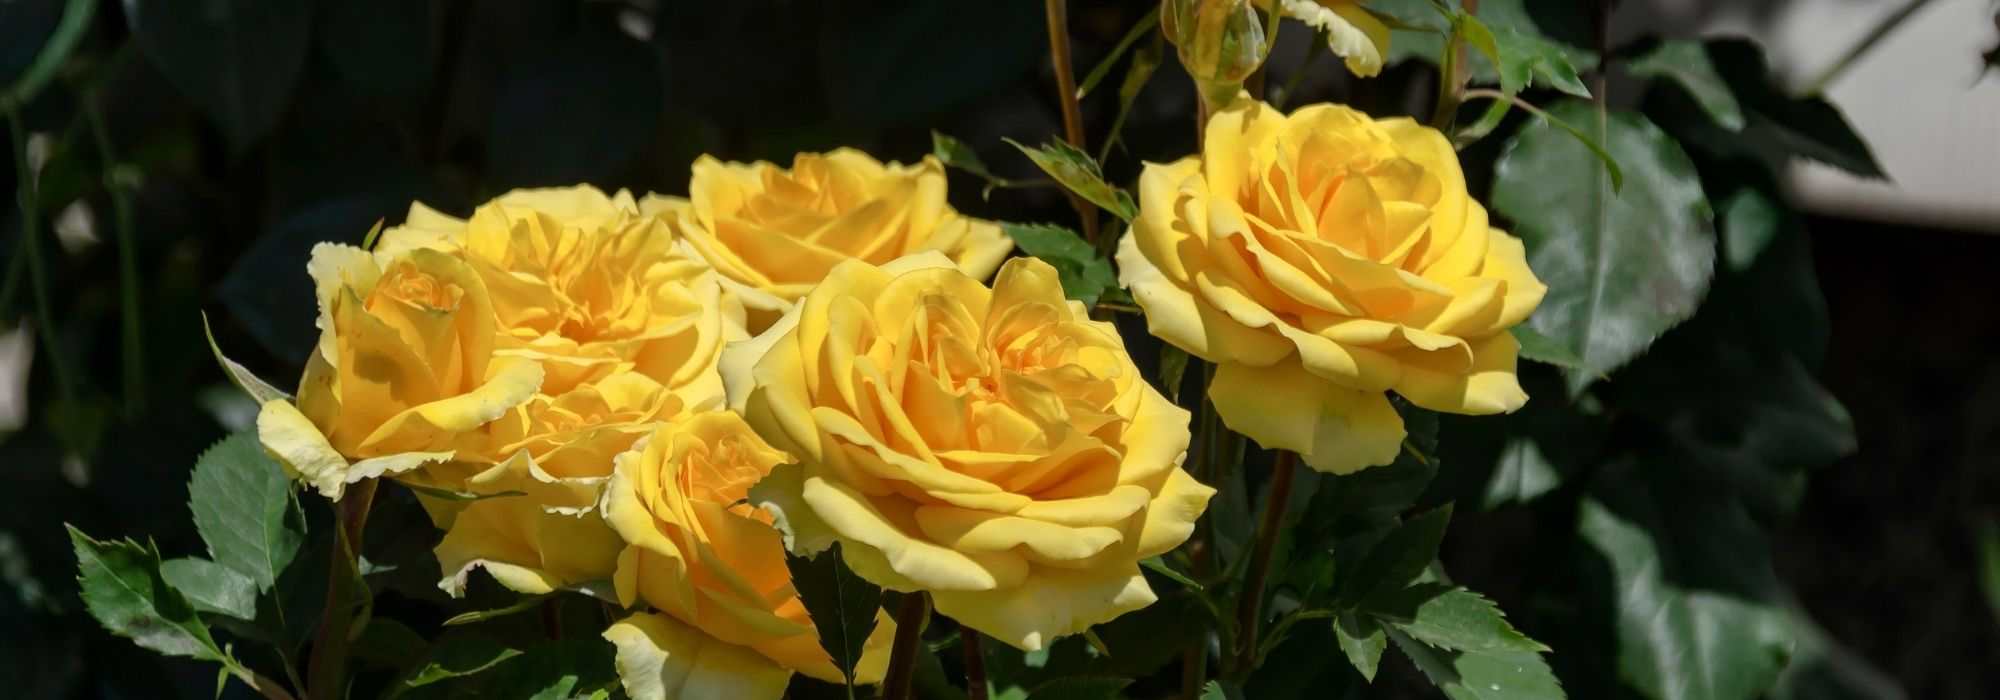 6 rosiers buissons à grandes fleurs jaunes